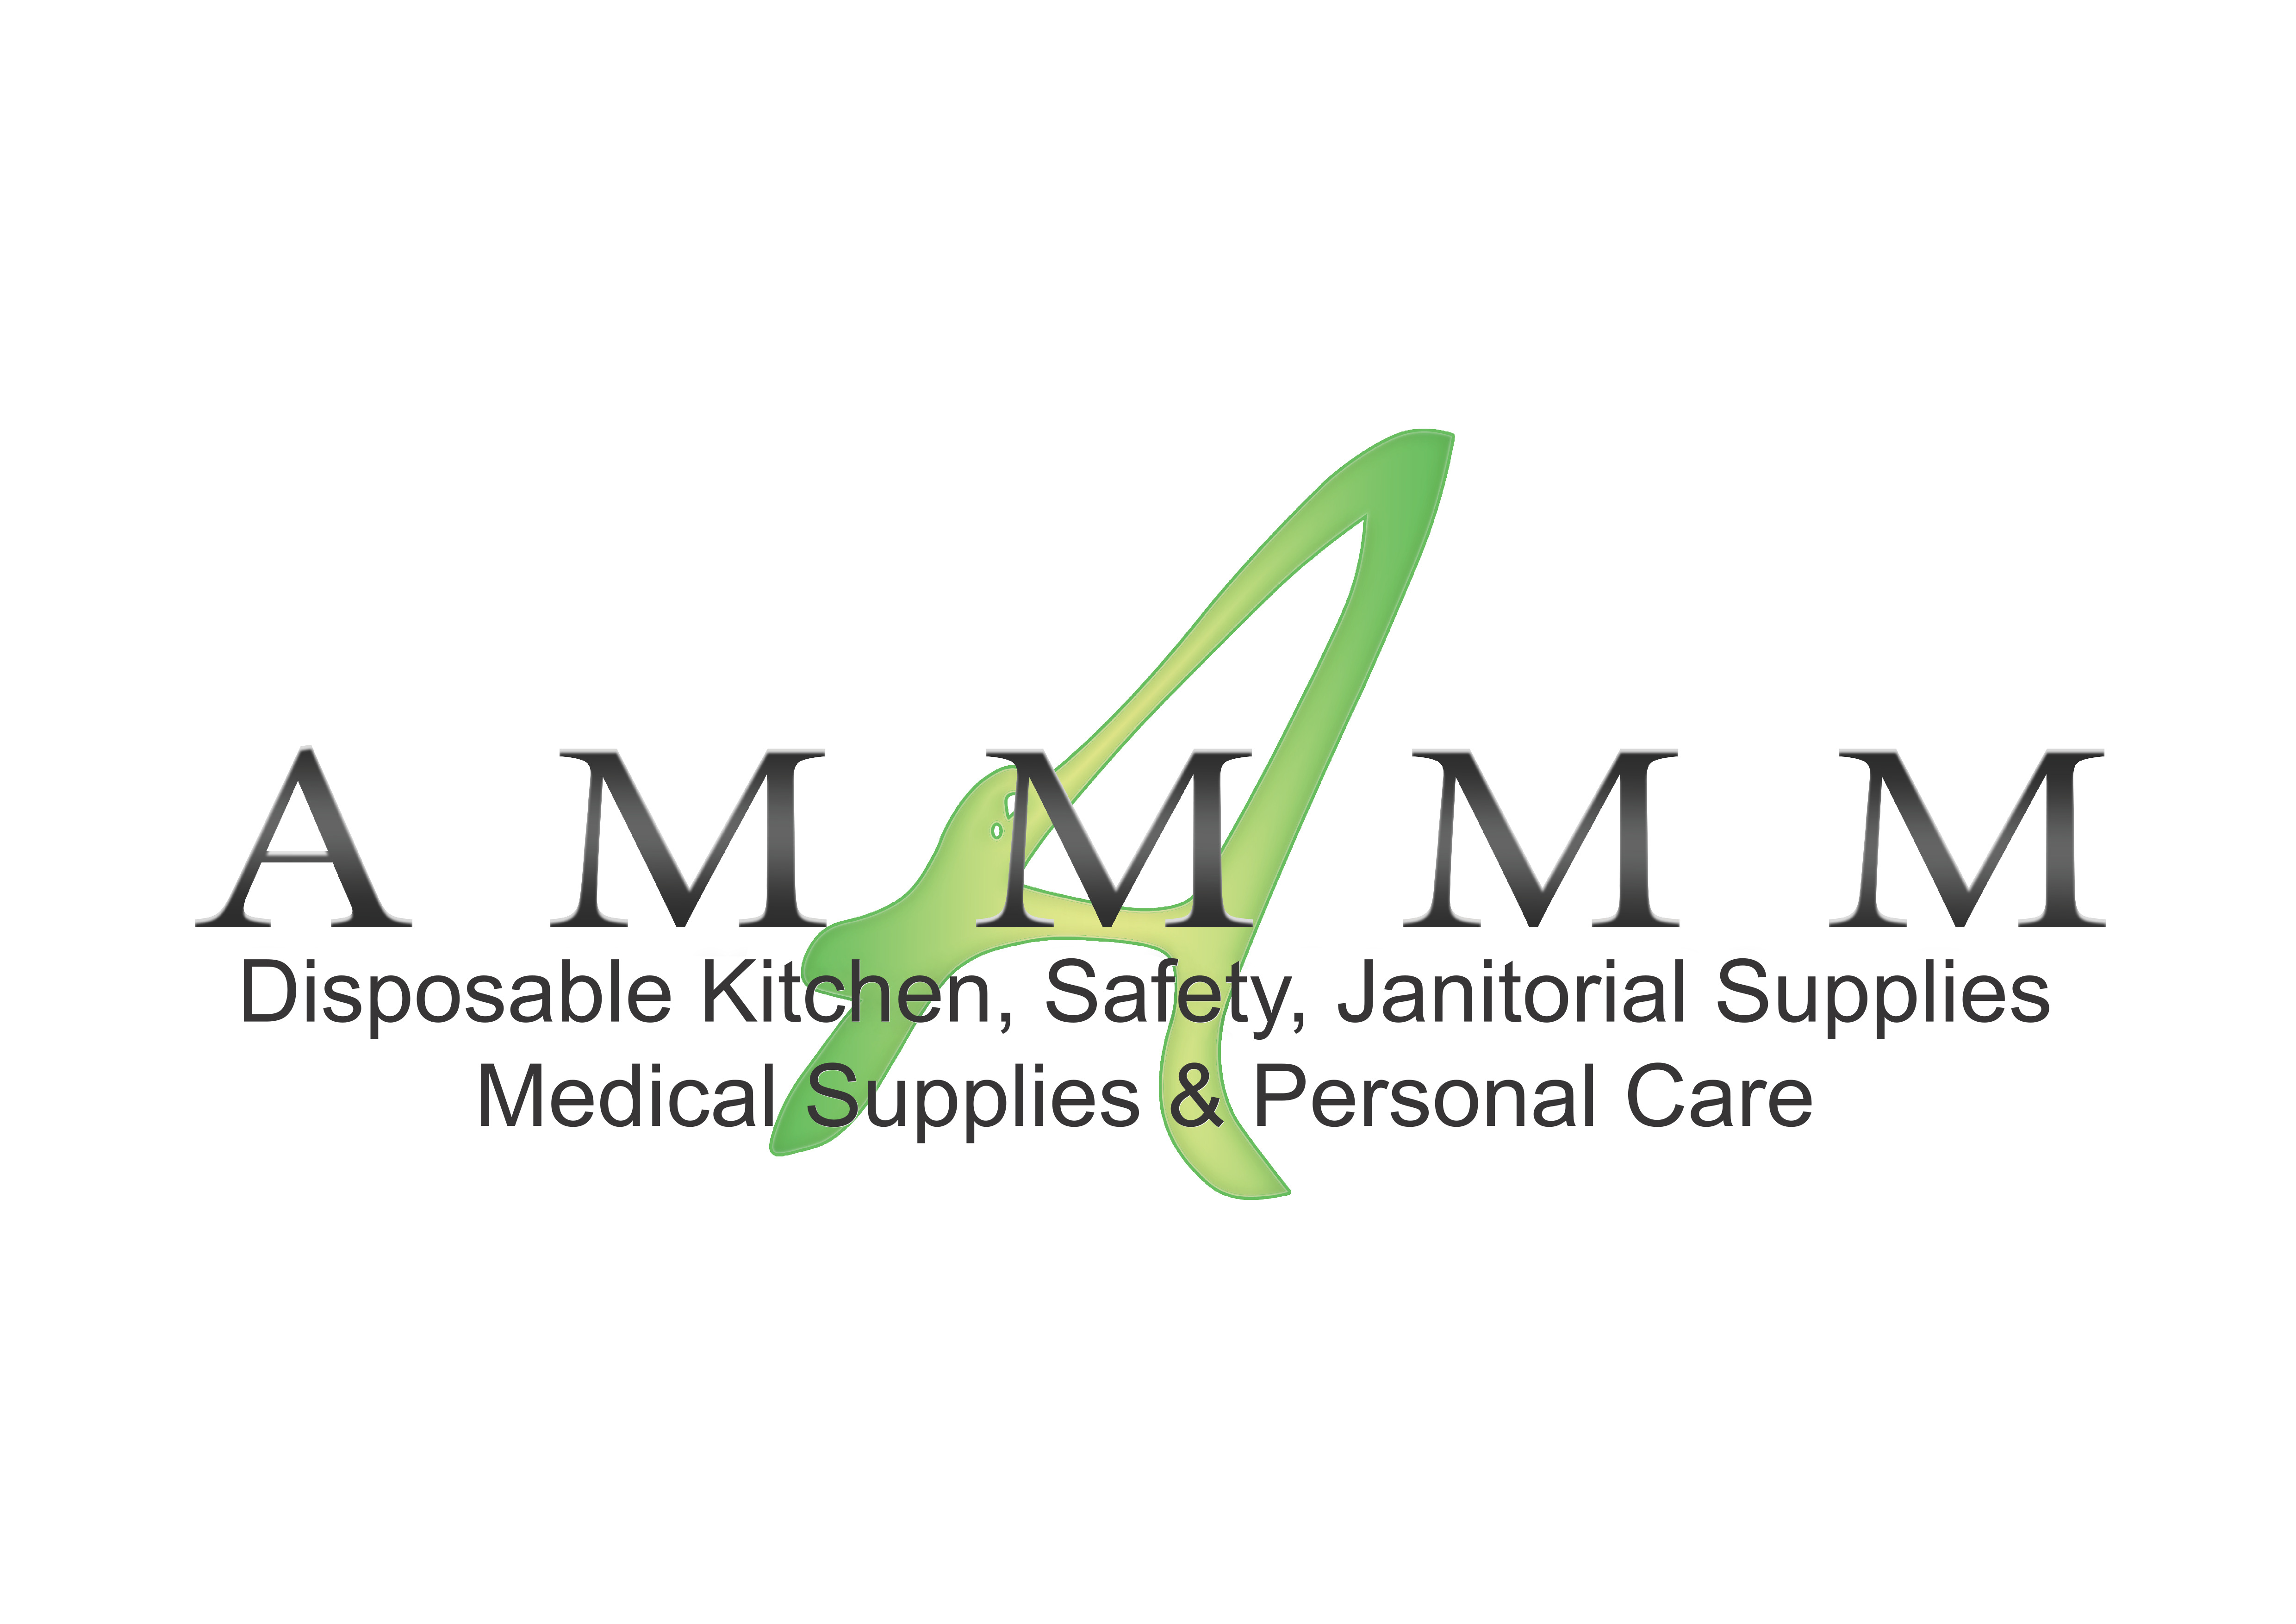 AmmMm Inc.